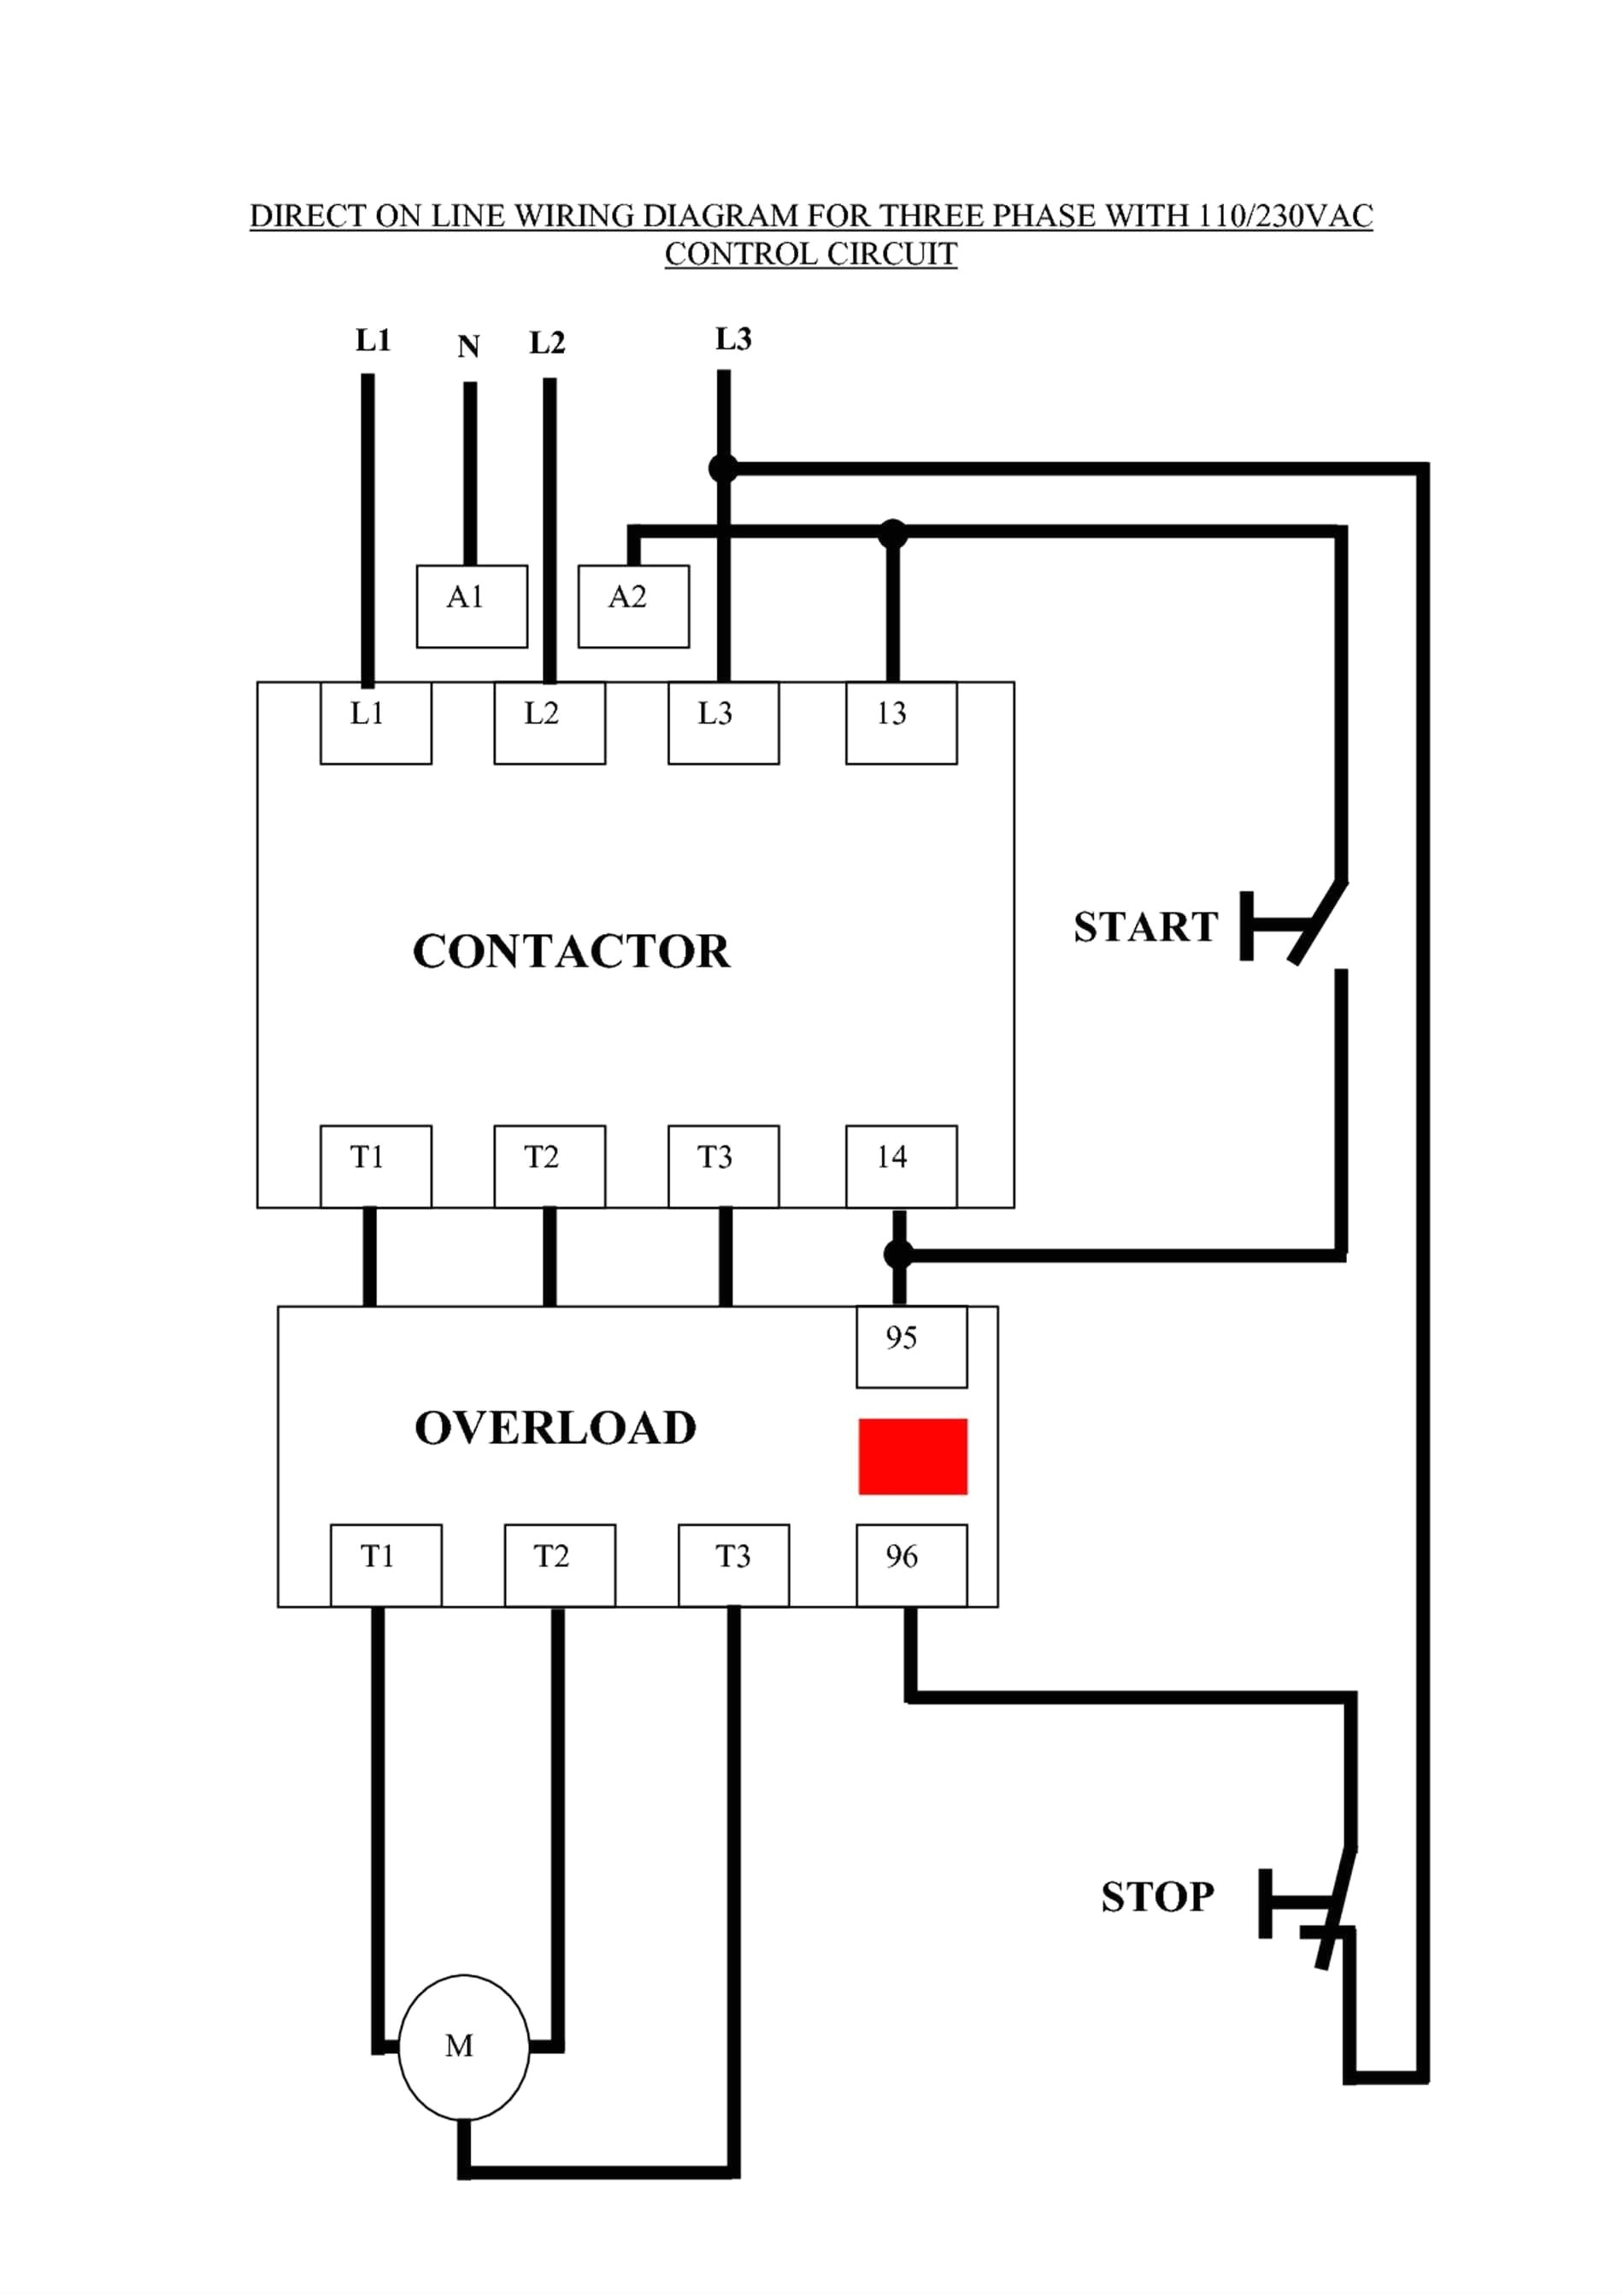 wiring diagram schneider contactor unique telemecanique contactor wiring diagram wiring diagrams for of wiring diagram schneider contactor jpg